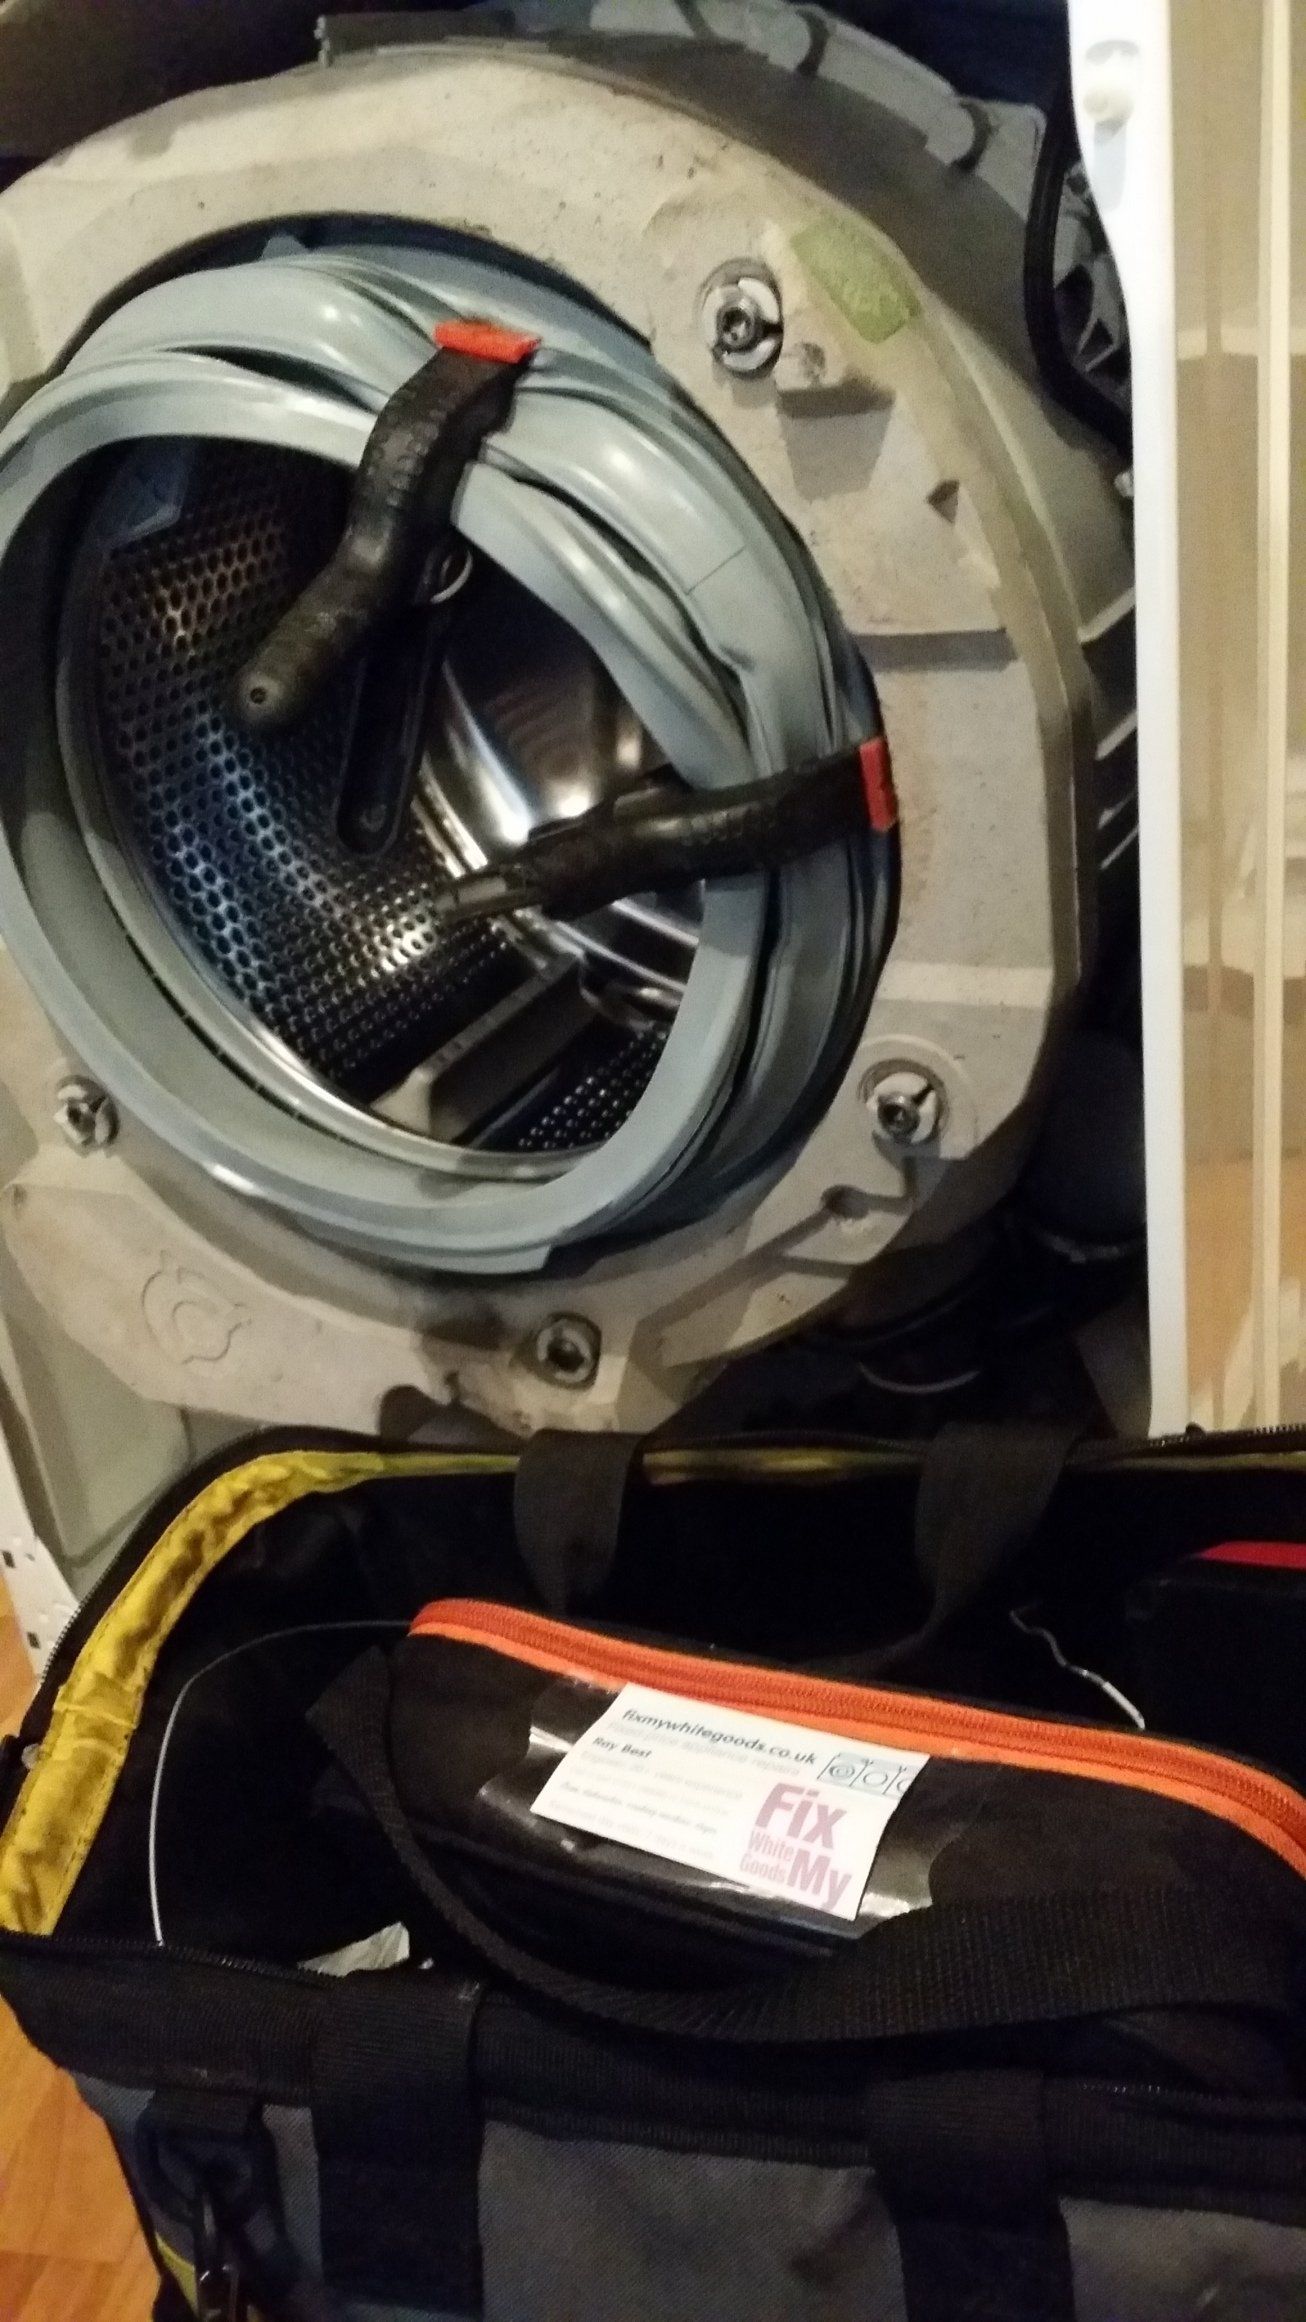 Washing machine door seal being replaced